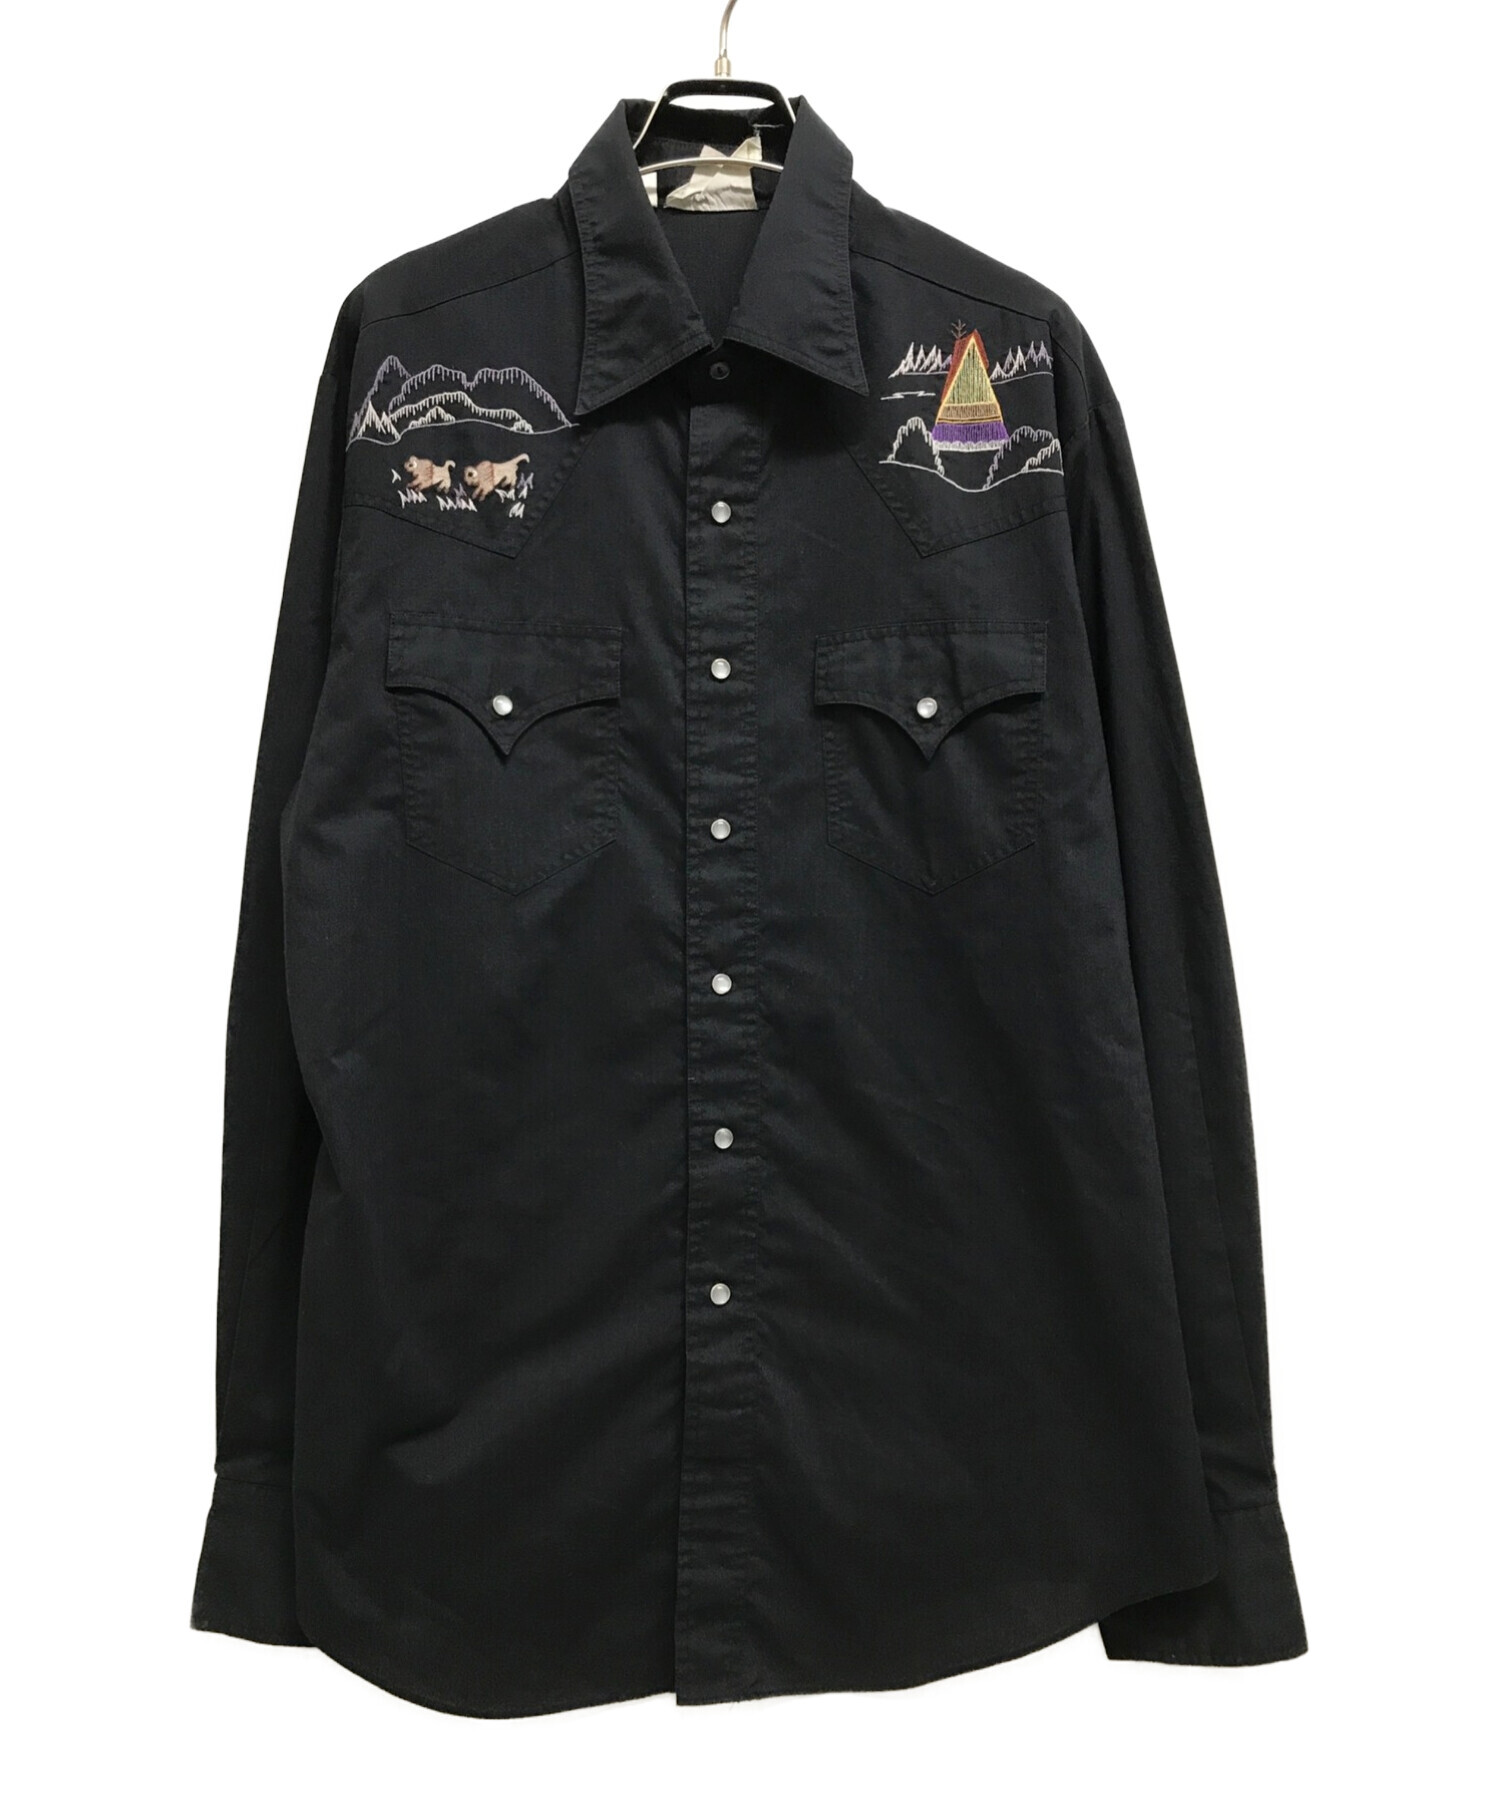 ROCKING RANCH WEAR (ロッキング ランチ ウェア) 刺繍ウエスタンシャツ ブラック サイズ:L